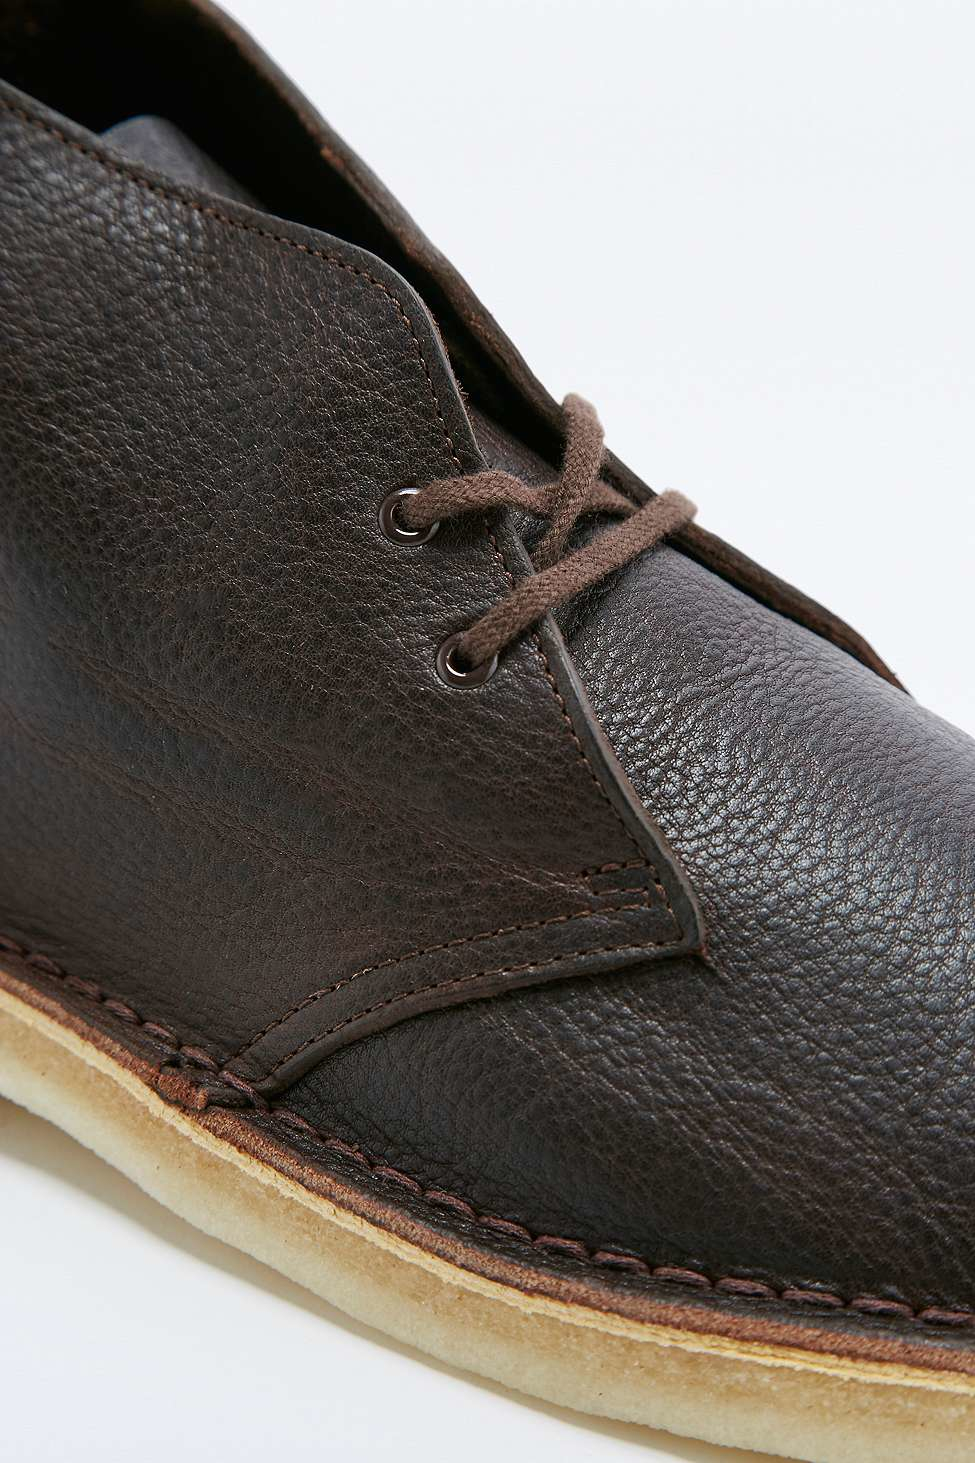 clarks desert boot black tumbled leather